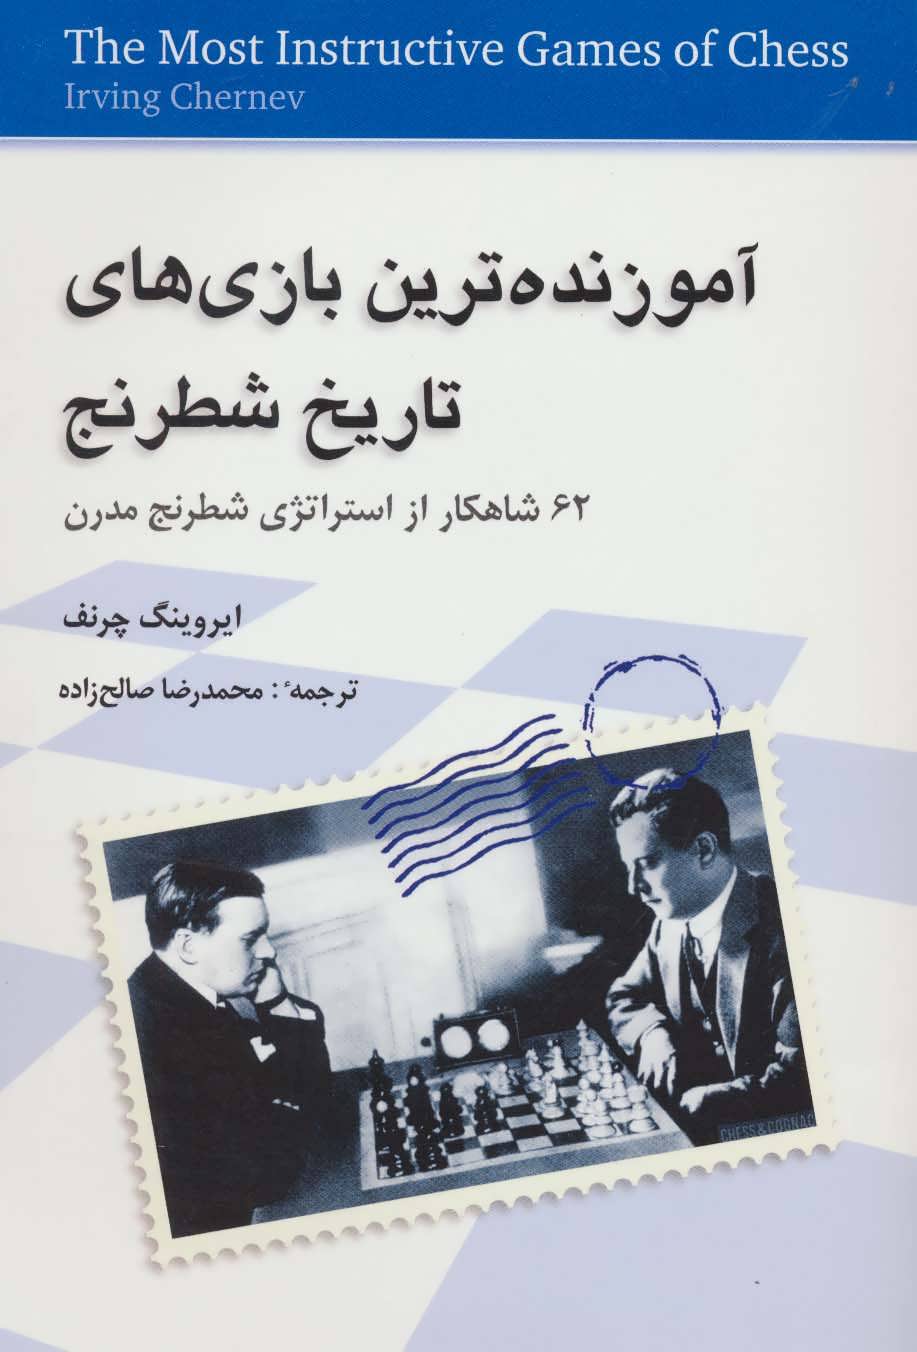  کتاب آموزنده ترین بازی های تاریخ شطرنج